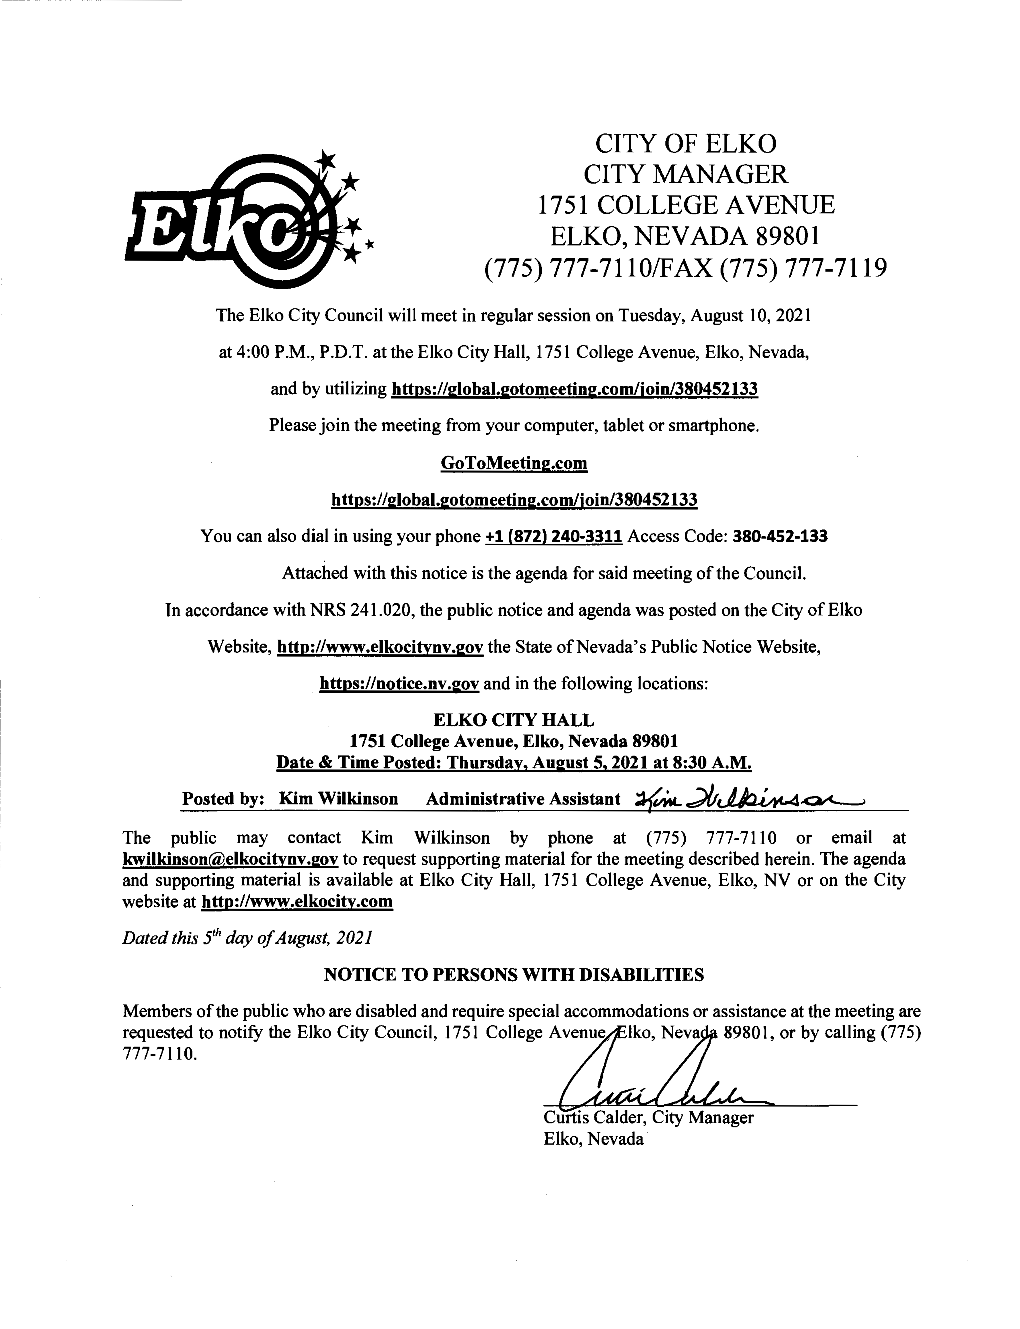 City of Elko City Manager 1751 College a Venue Elko, Nevada 89801 (775) 777-7110/Fax (775) 777-7119